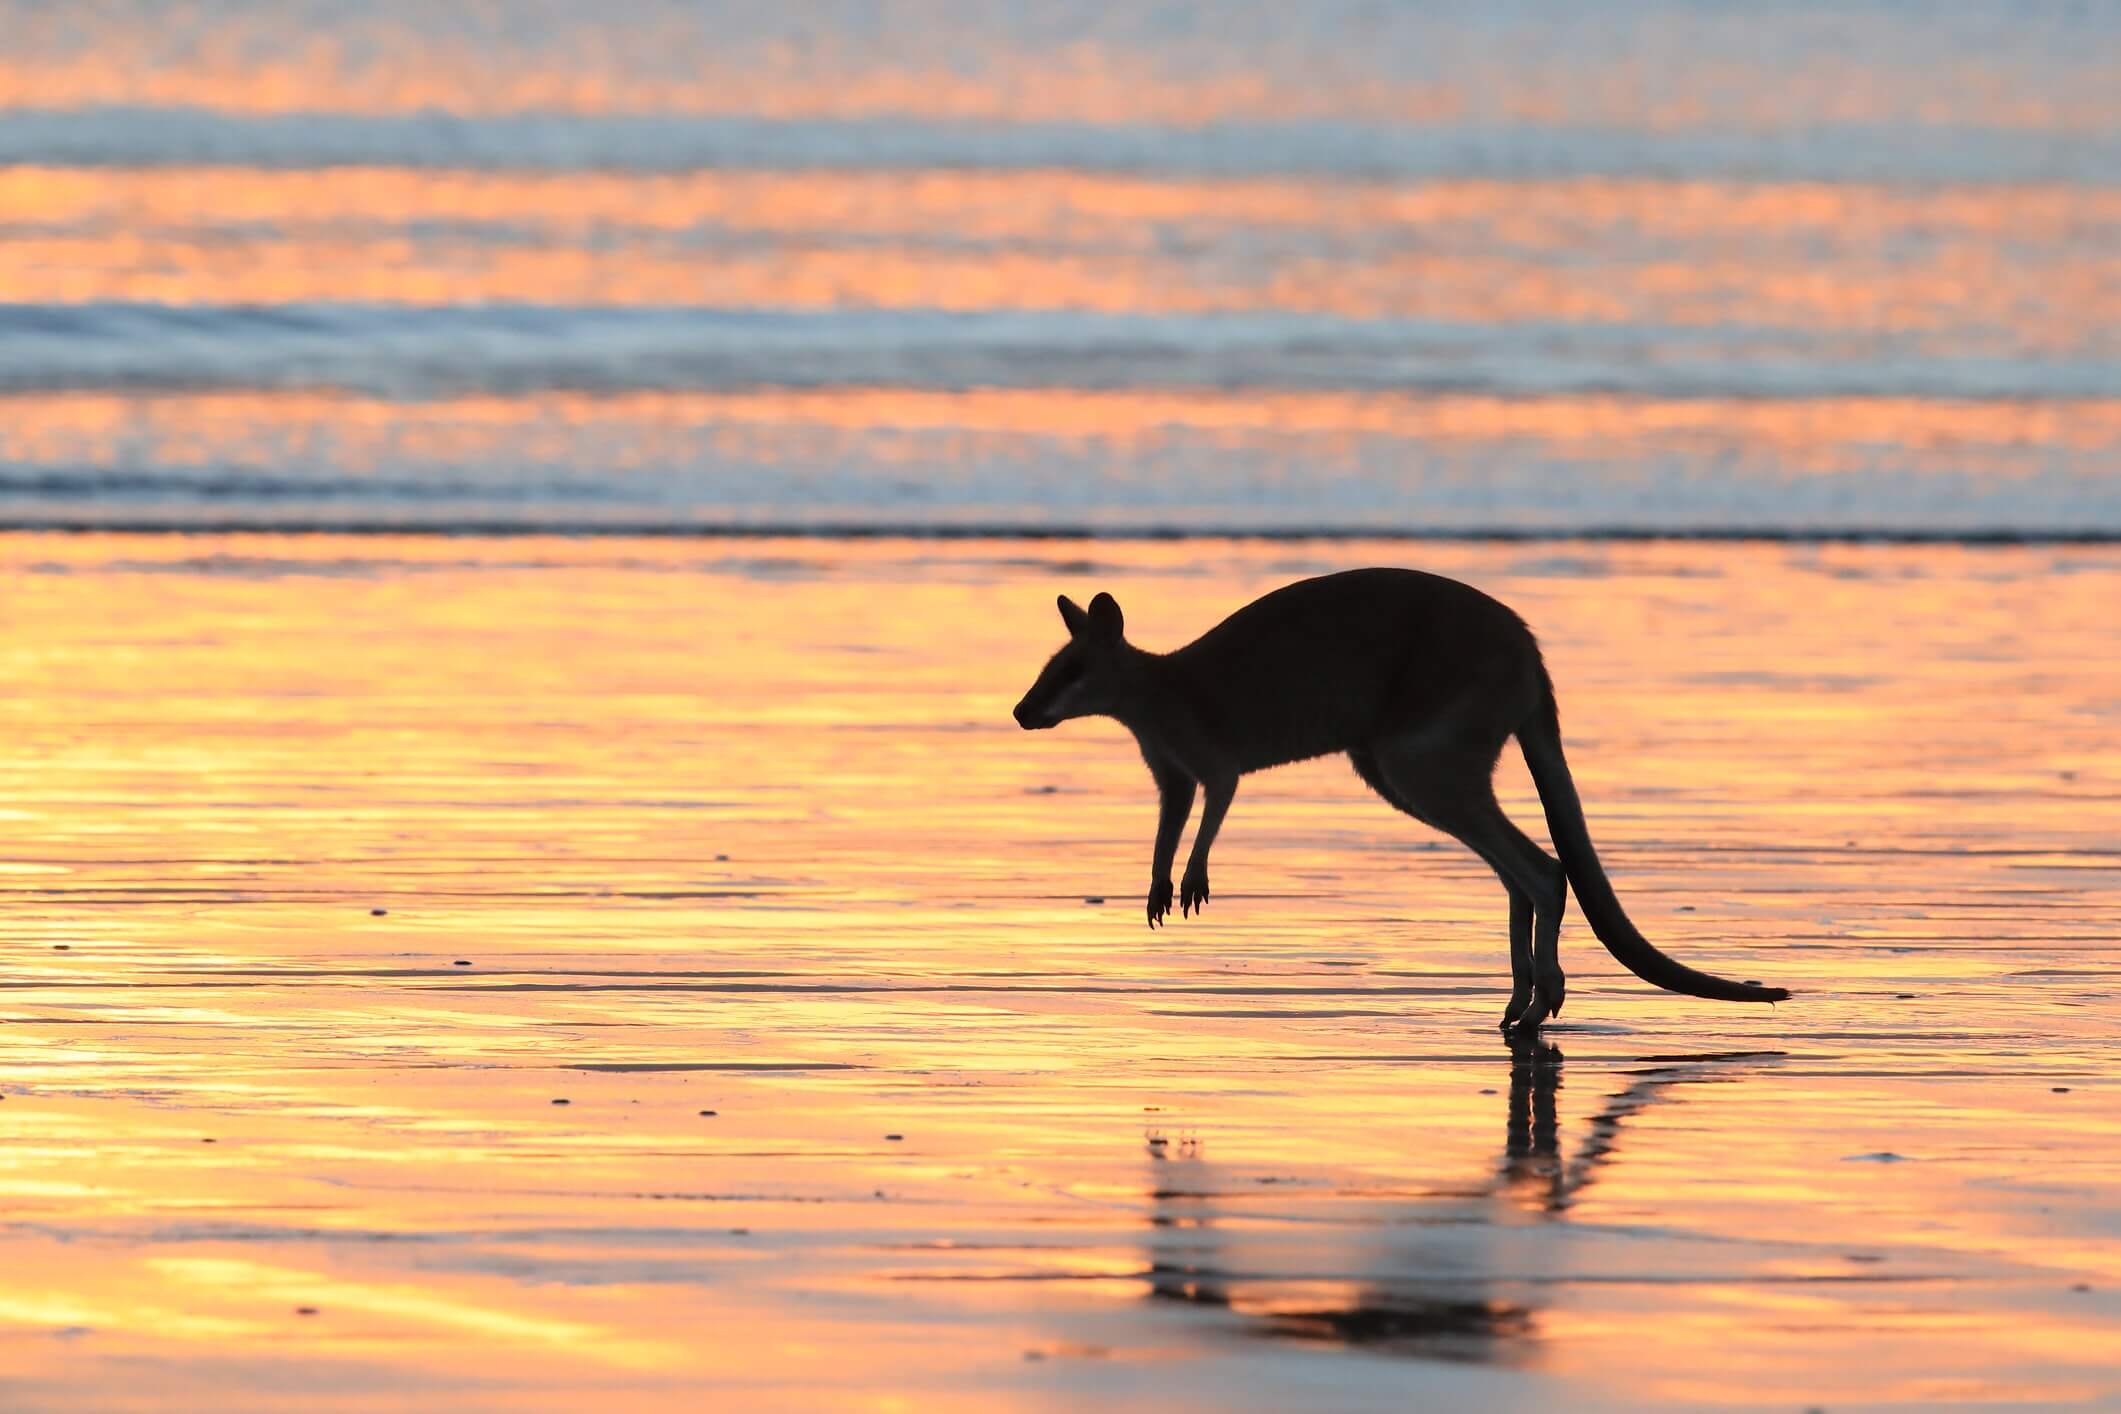 Australia's secret beaches